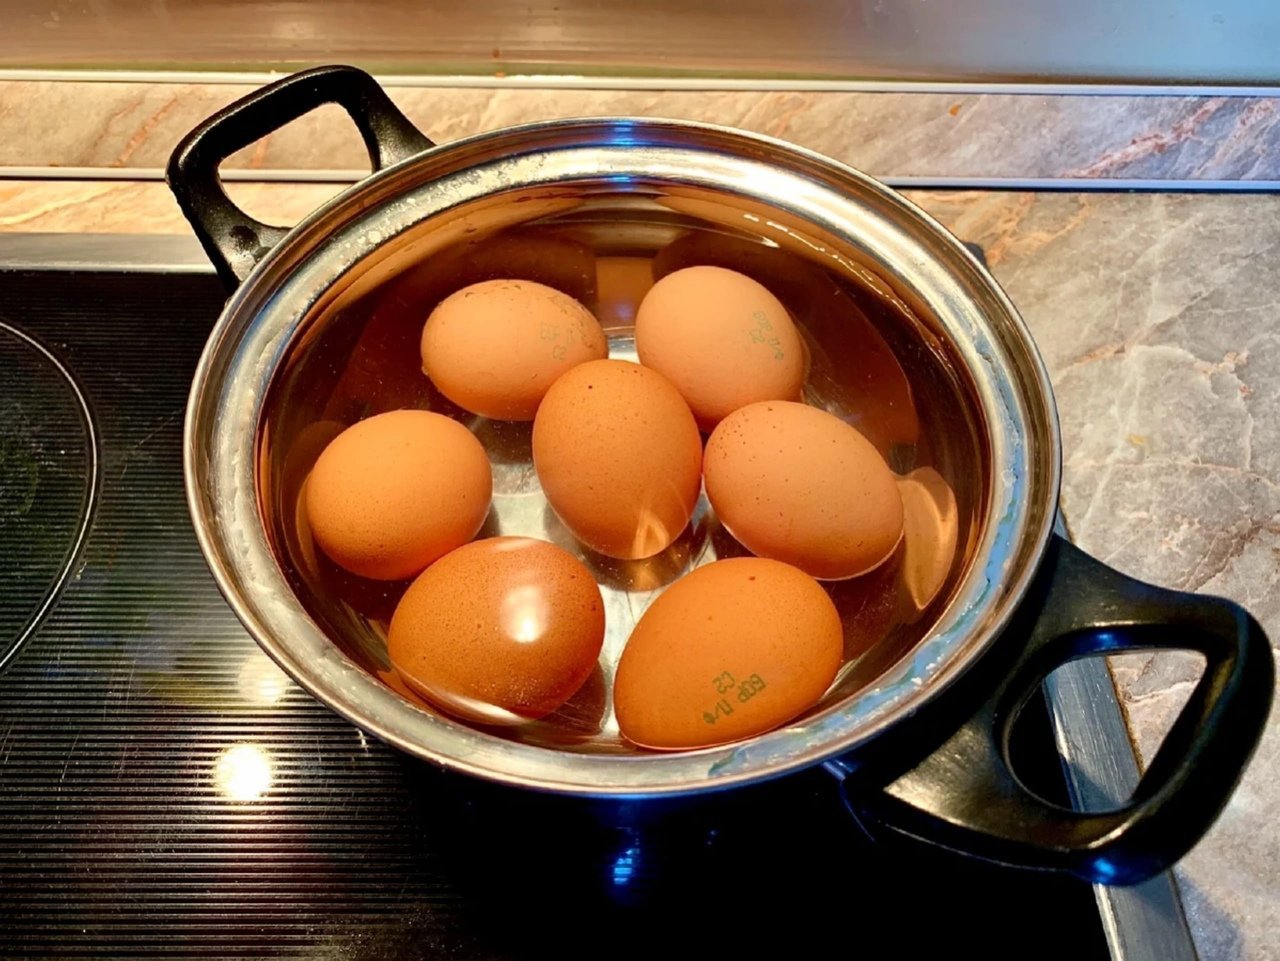 Видео вареные яички. Яйца в кастрюле. Отваривание яиц. Что приготовить с яйцами. Вареные яйца.